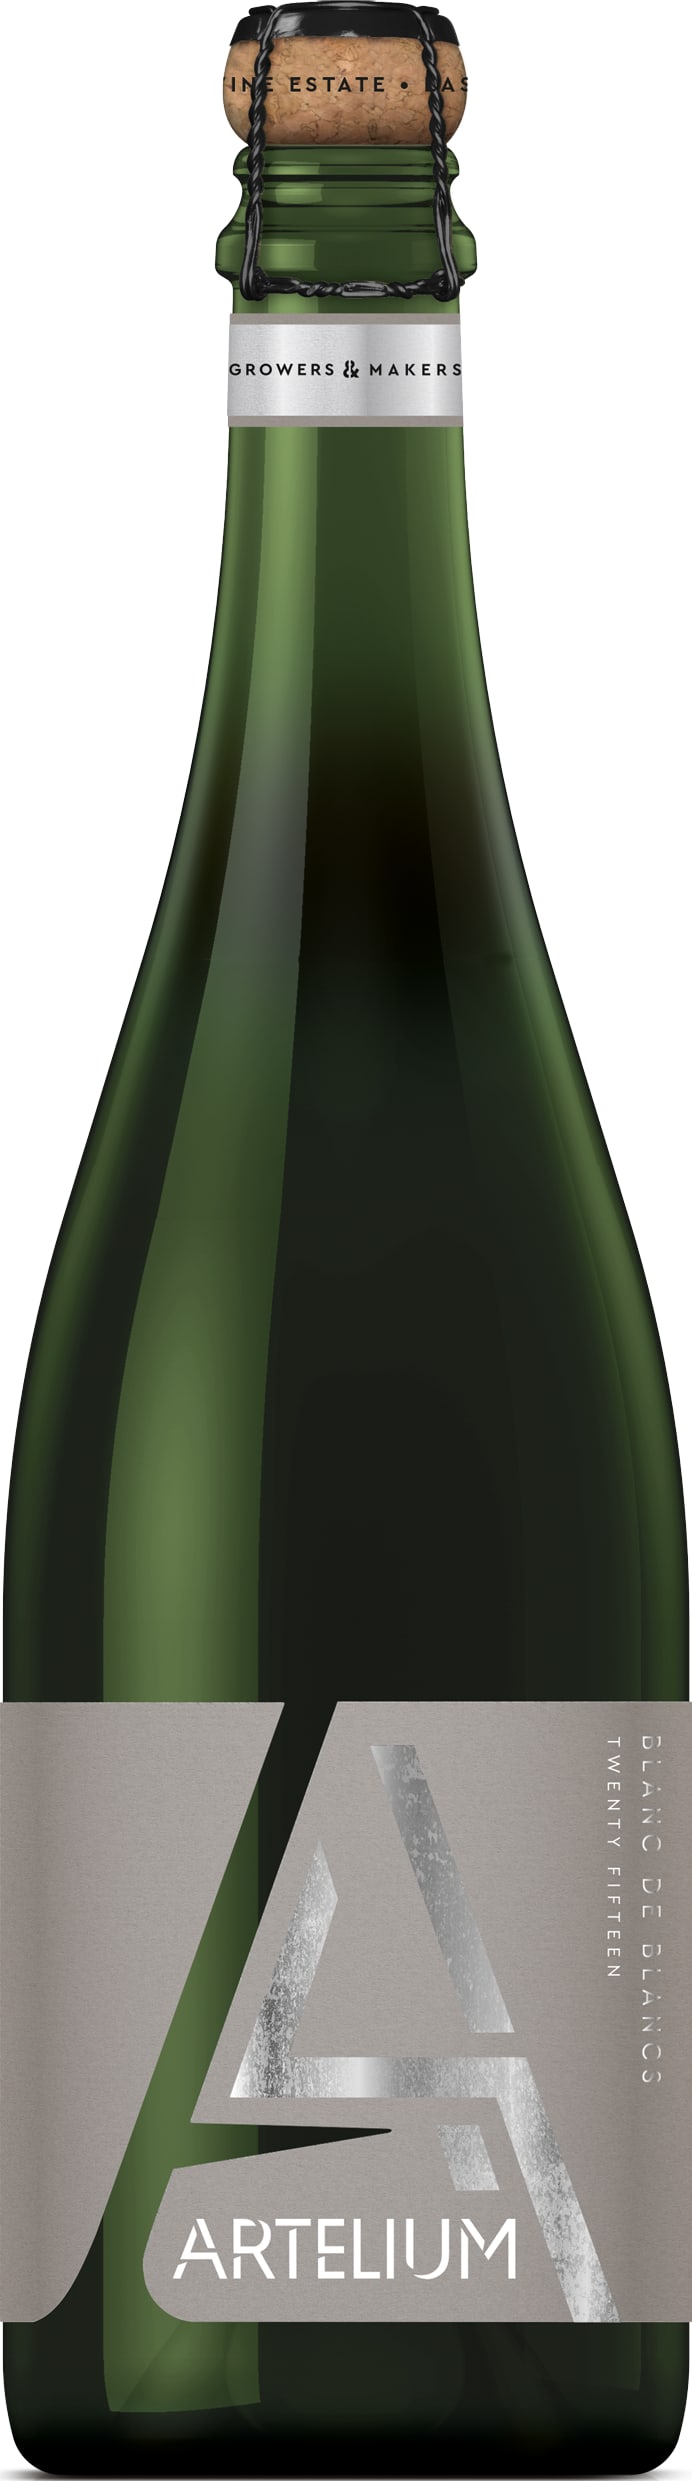 Artelium Blanc de Blancs 2015 75cl - Buy Artelium Wines from GREAT WINES DIRECT wine shop